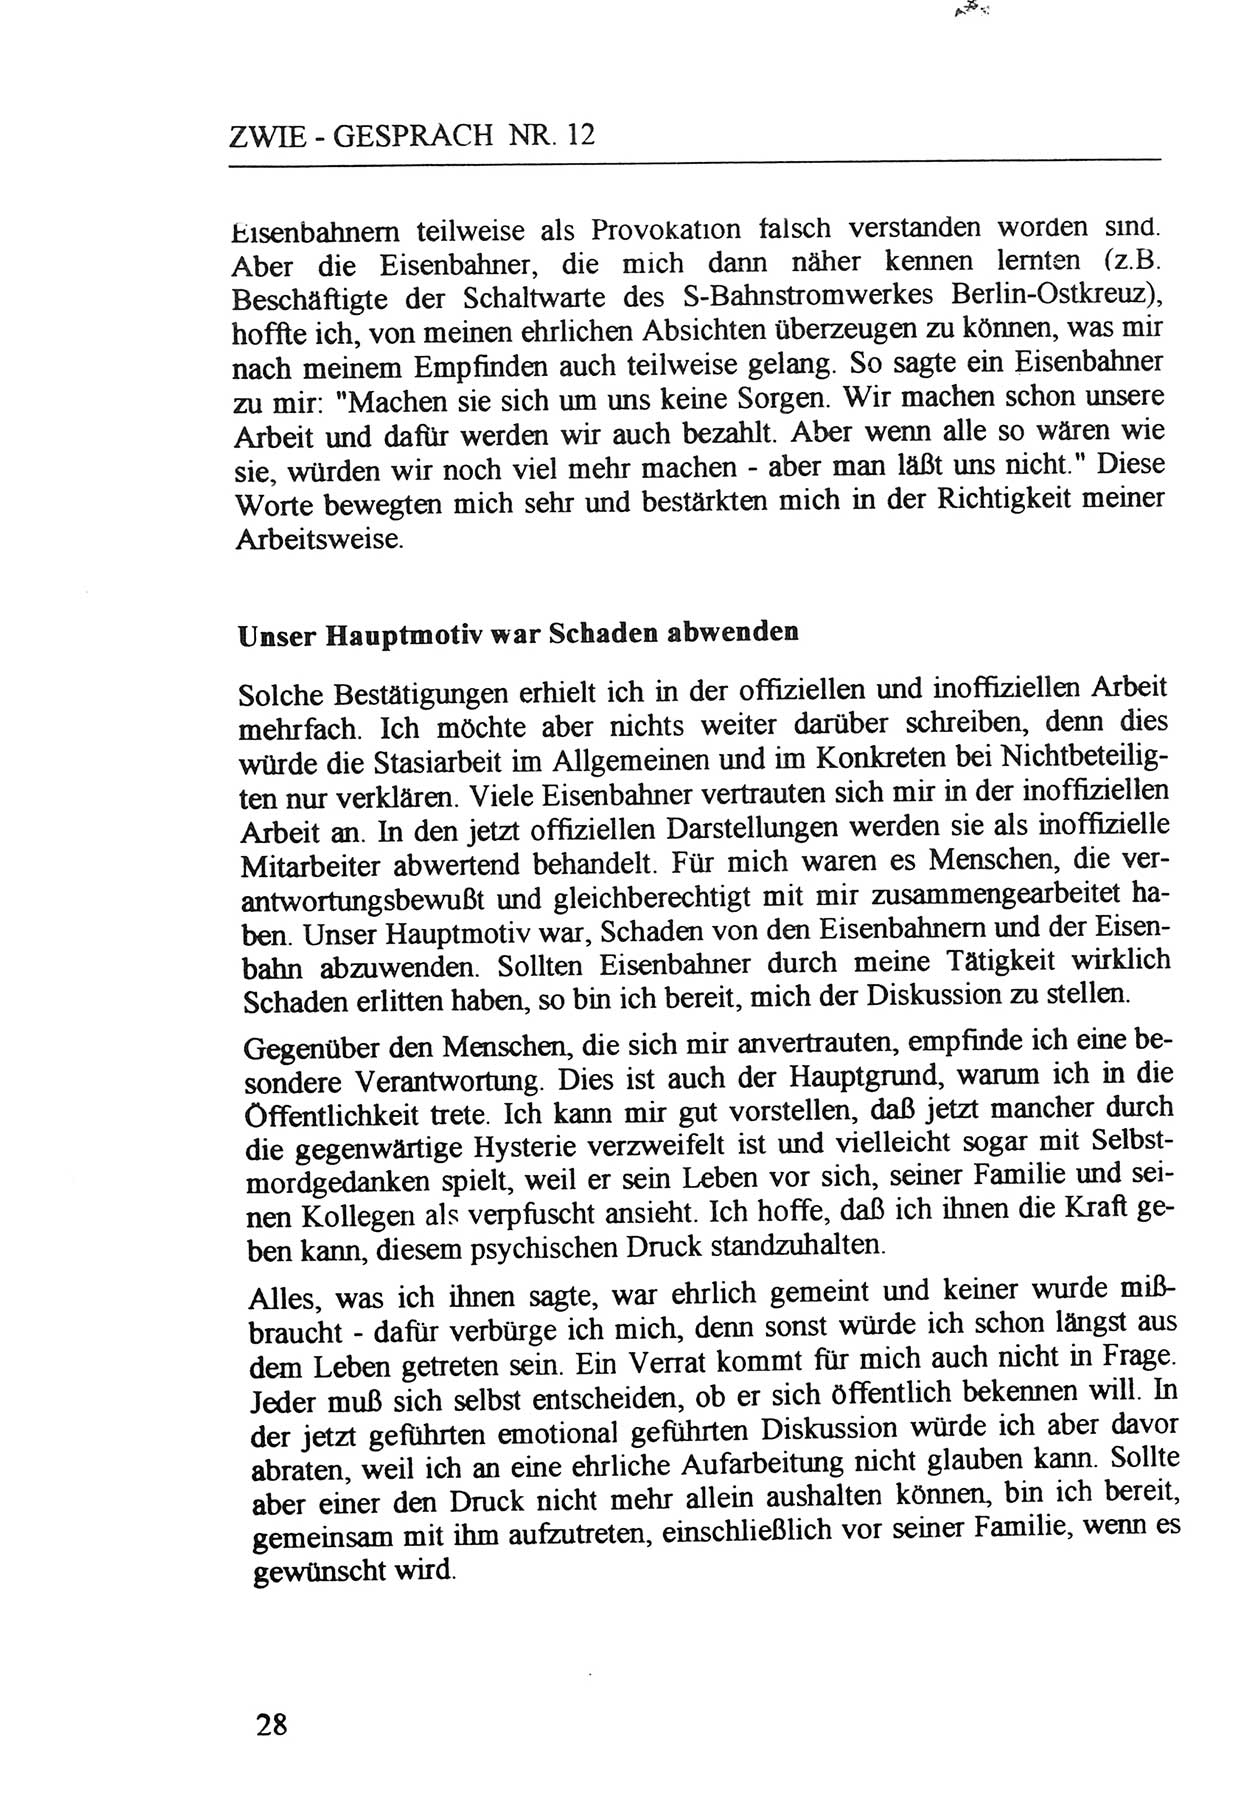 Zwie-Gespräch, Beiträge zur Aufarbeitung der Staatssicherheits-Vergangenheit [Deutsche Demokratische Republik (DDR)], Ausgabe Nr. 12, Berlin 1993, Seite 28 (Zwie-Gespr. Ausg. 12 1993, S. 28)